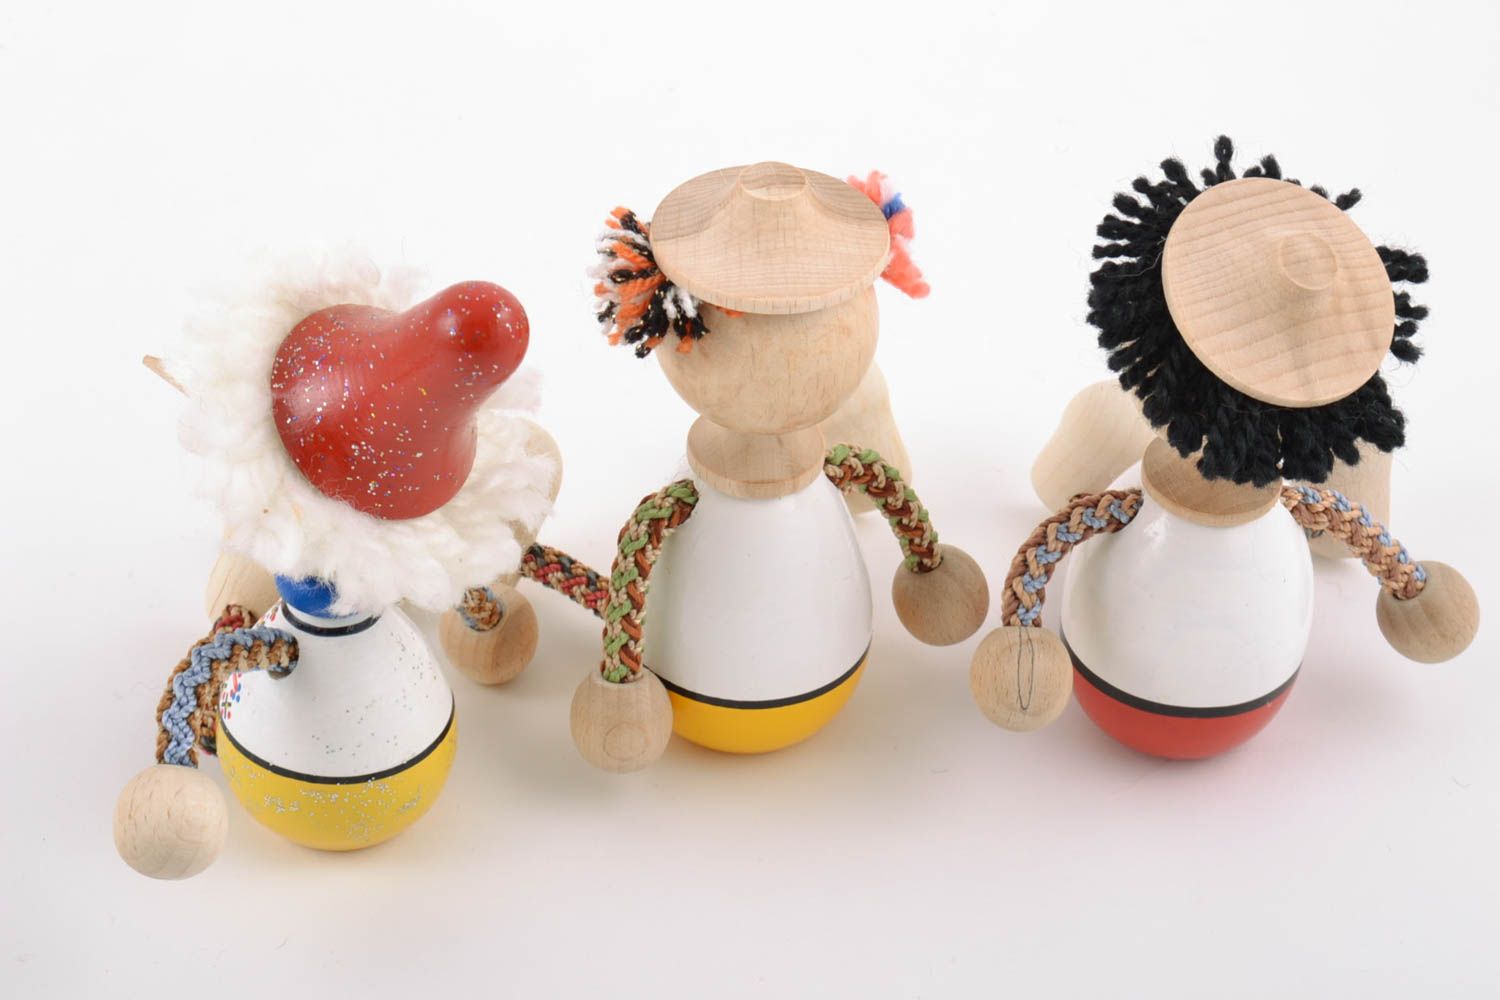 Авторские деревянные эко игрушки 3 штуки расписанные красками ручной работы  фото 4